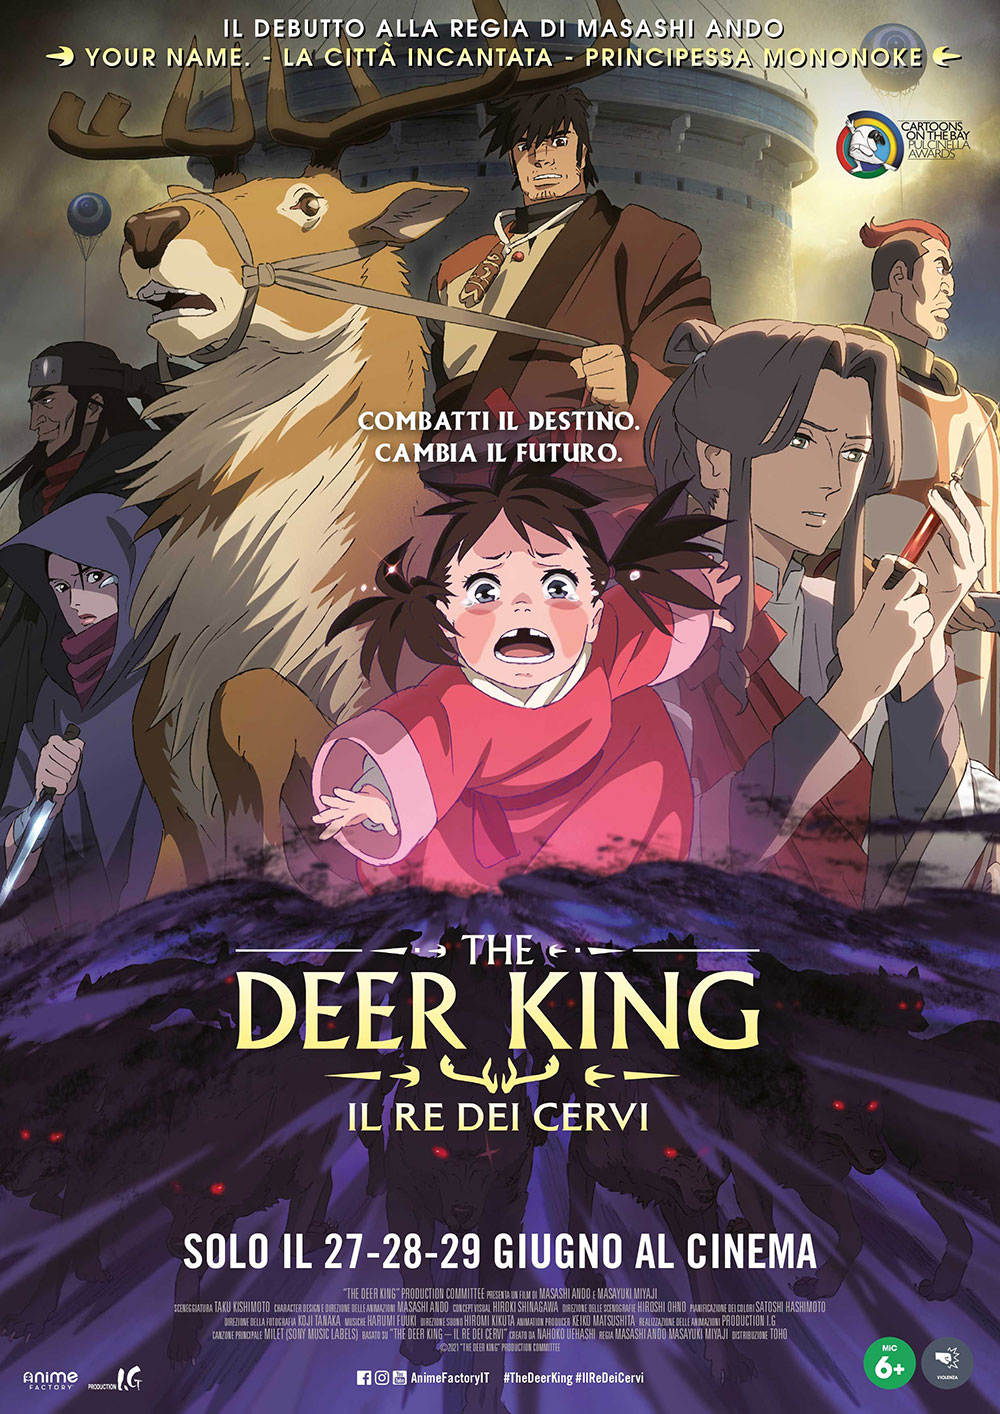 Locandina italiana di The Deer King, primo film da regista di Masashi Ando